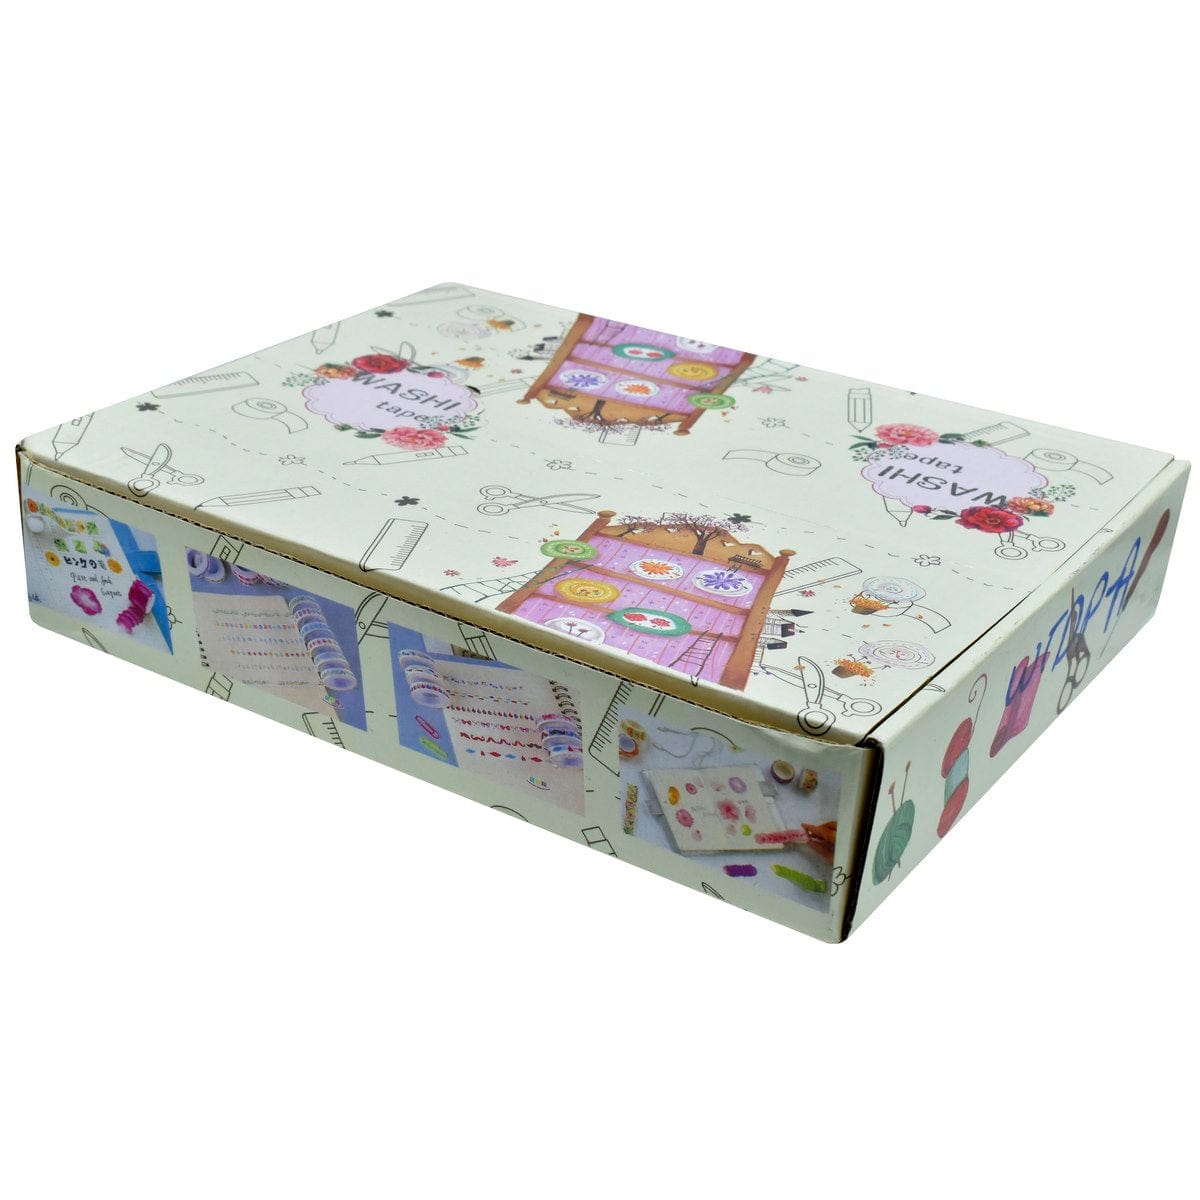 jags-mumbai Washi Tape Washi Tape Box (60 Rolls of 1.5cm x 3m)